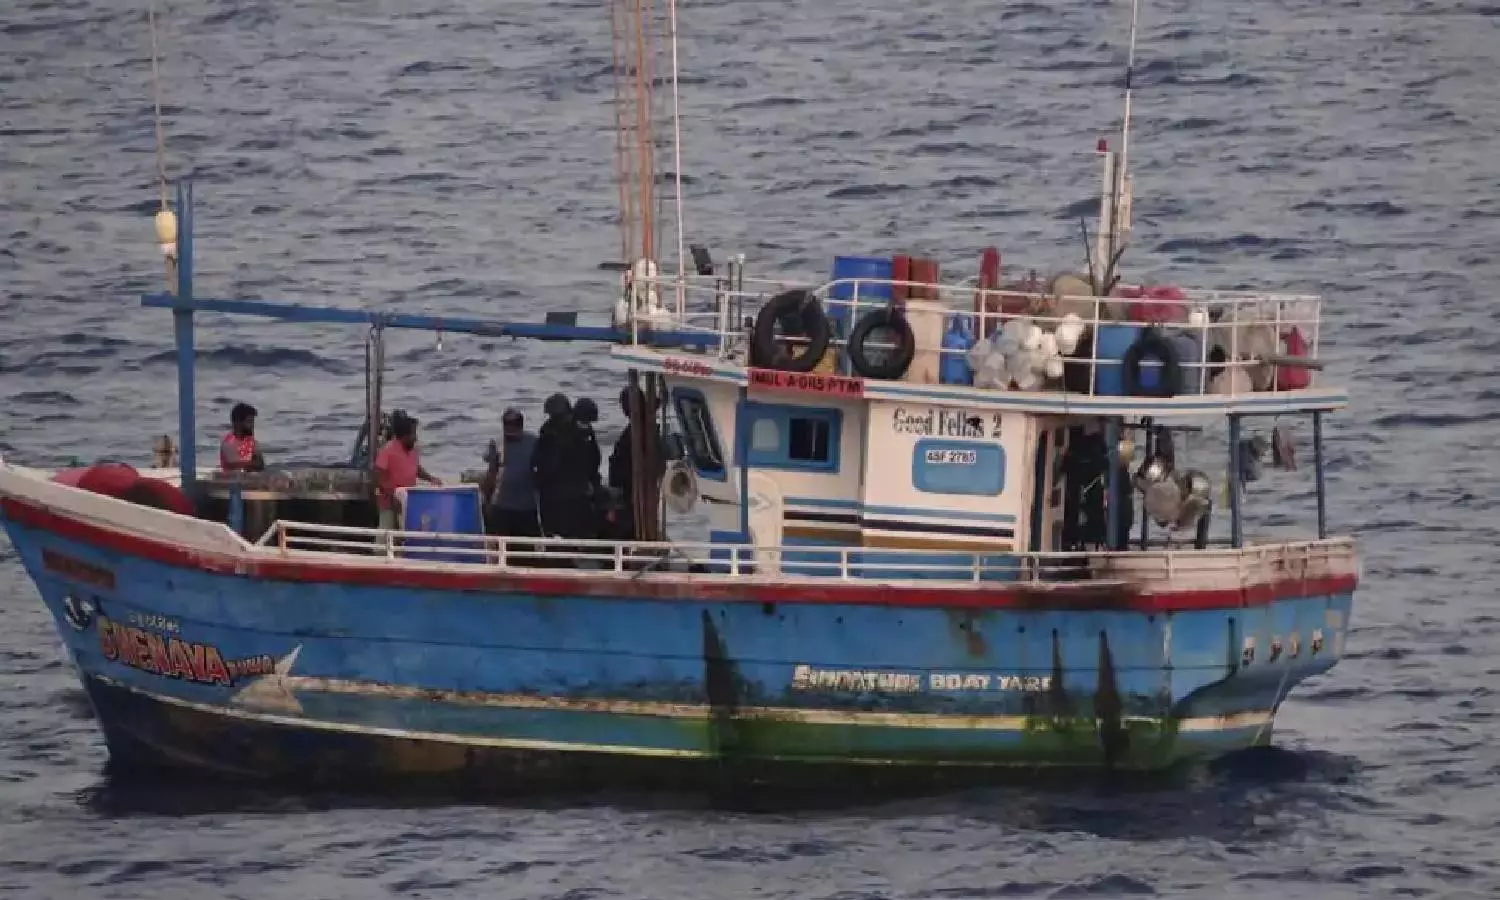 100 kg of heroin seized from Sri Lankan boat